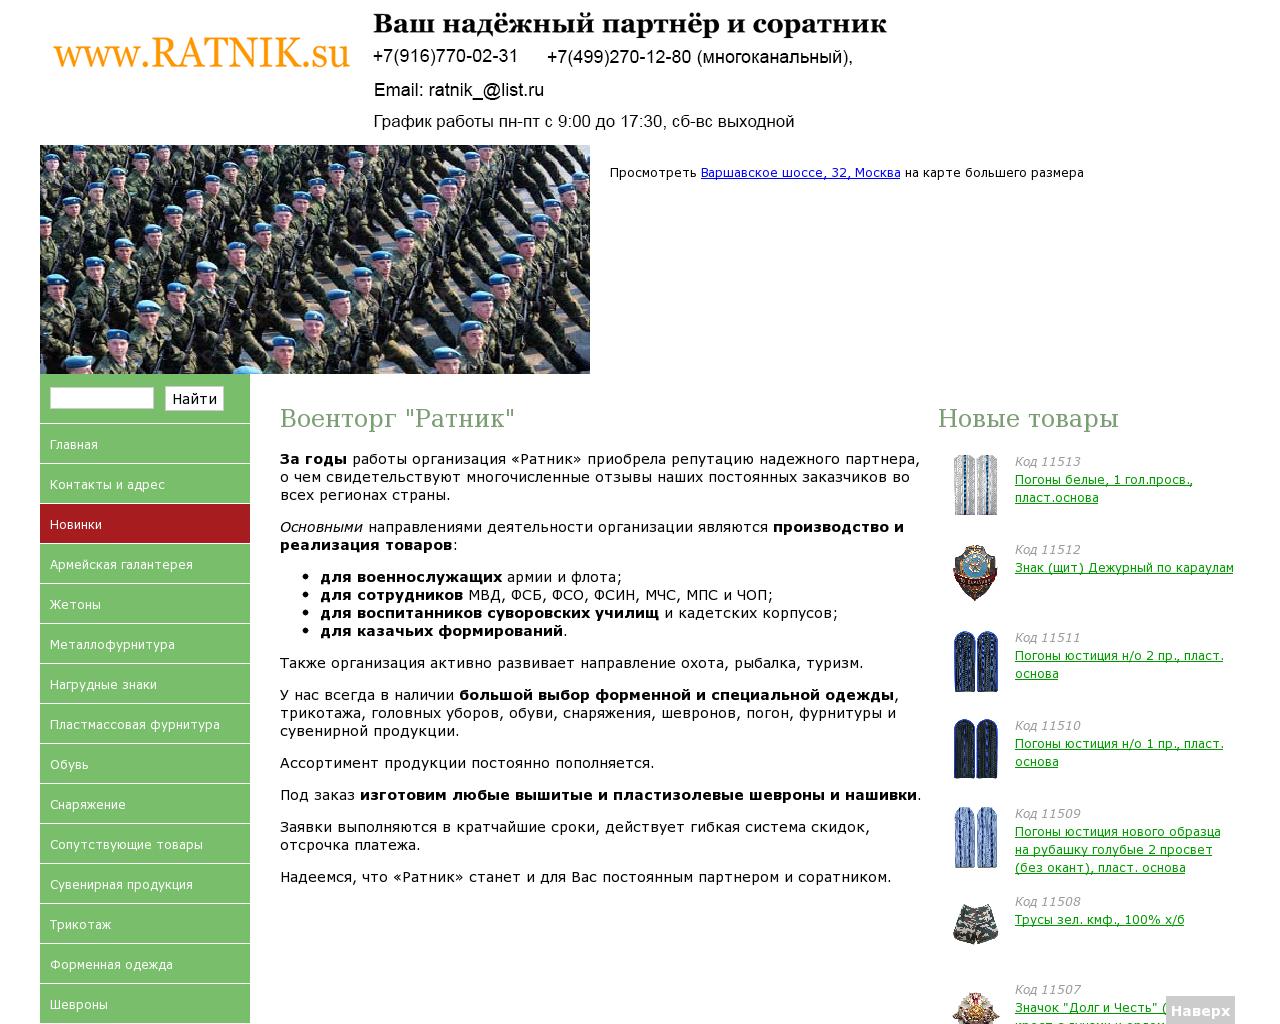 Изображение сайта ratnik.su в разрешении 1280x1024